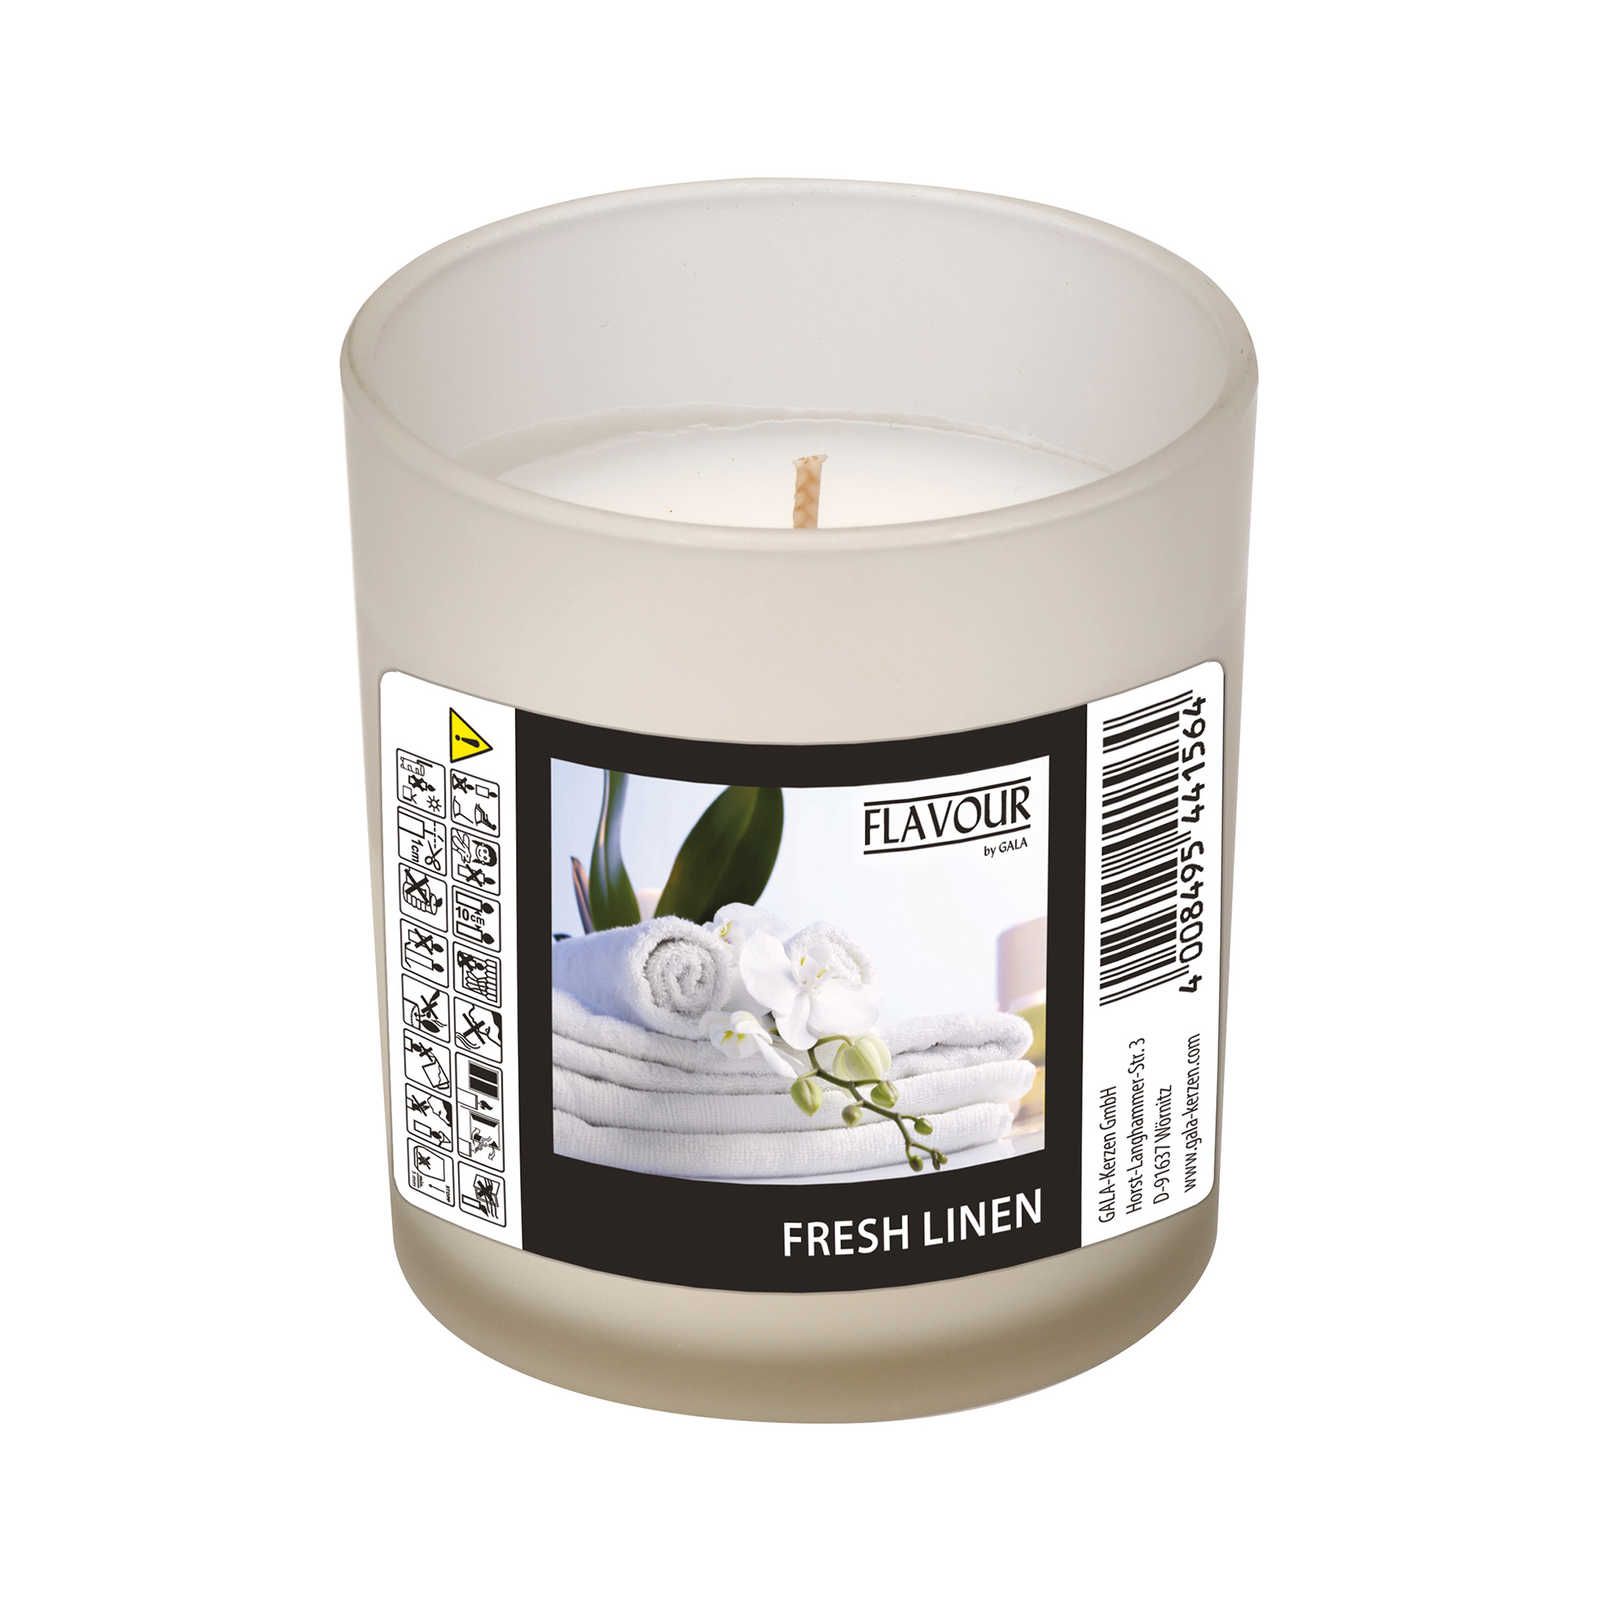             Fresh Linen Bougie parfumée à l'agréable odeur de linge fraîchement lavé - 110g
        